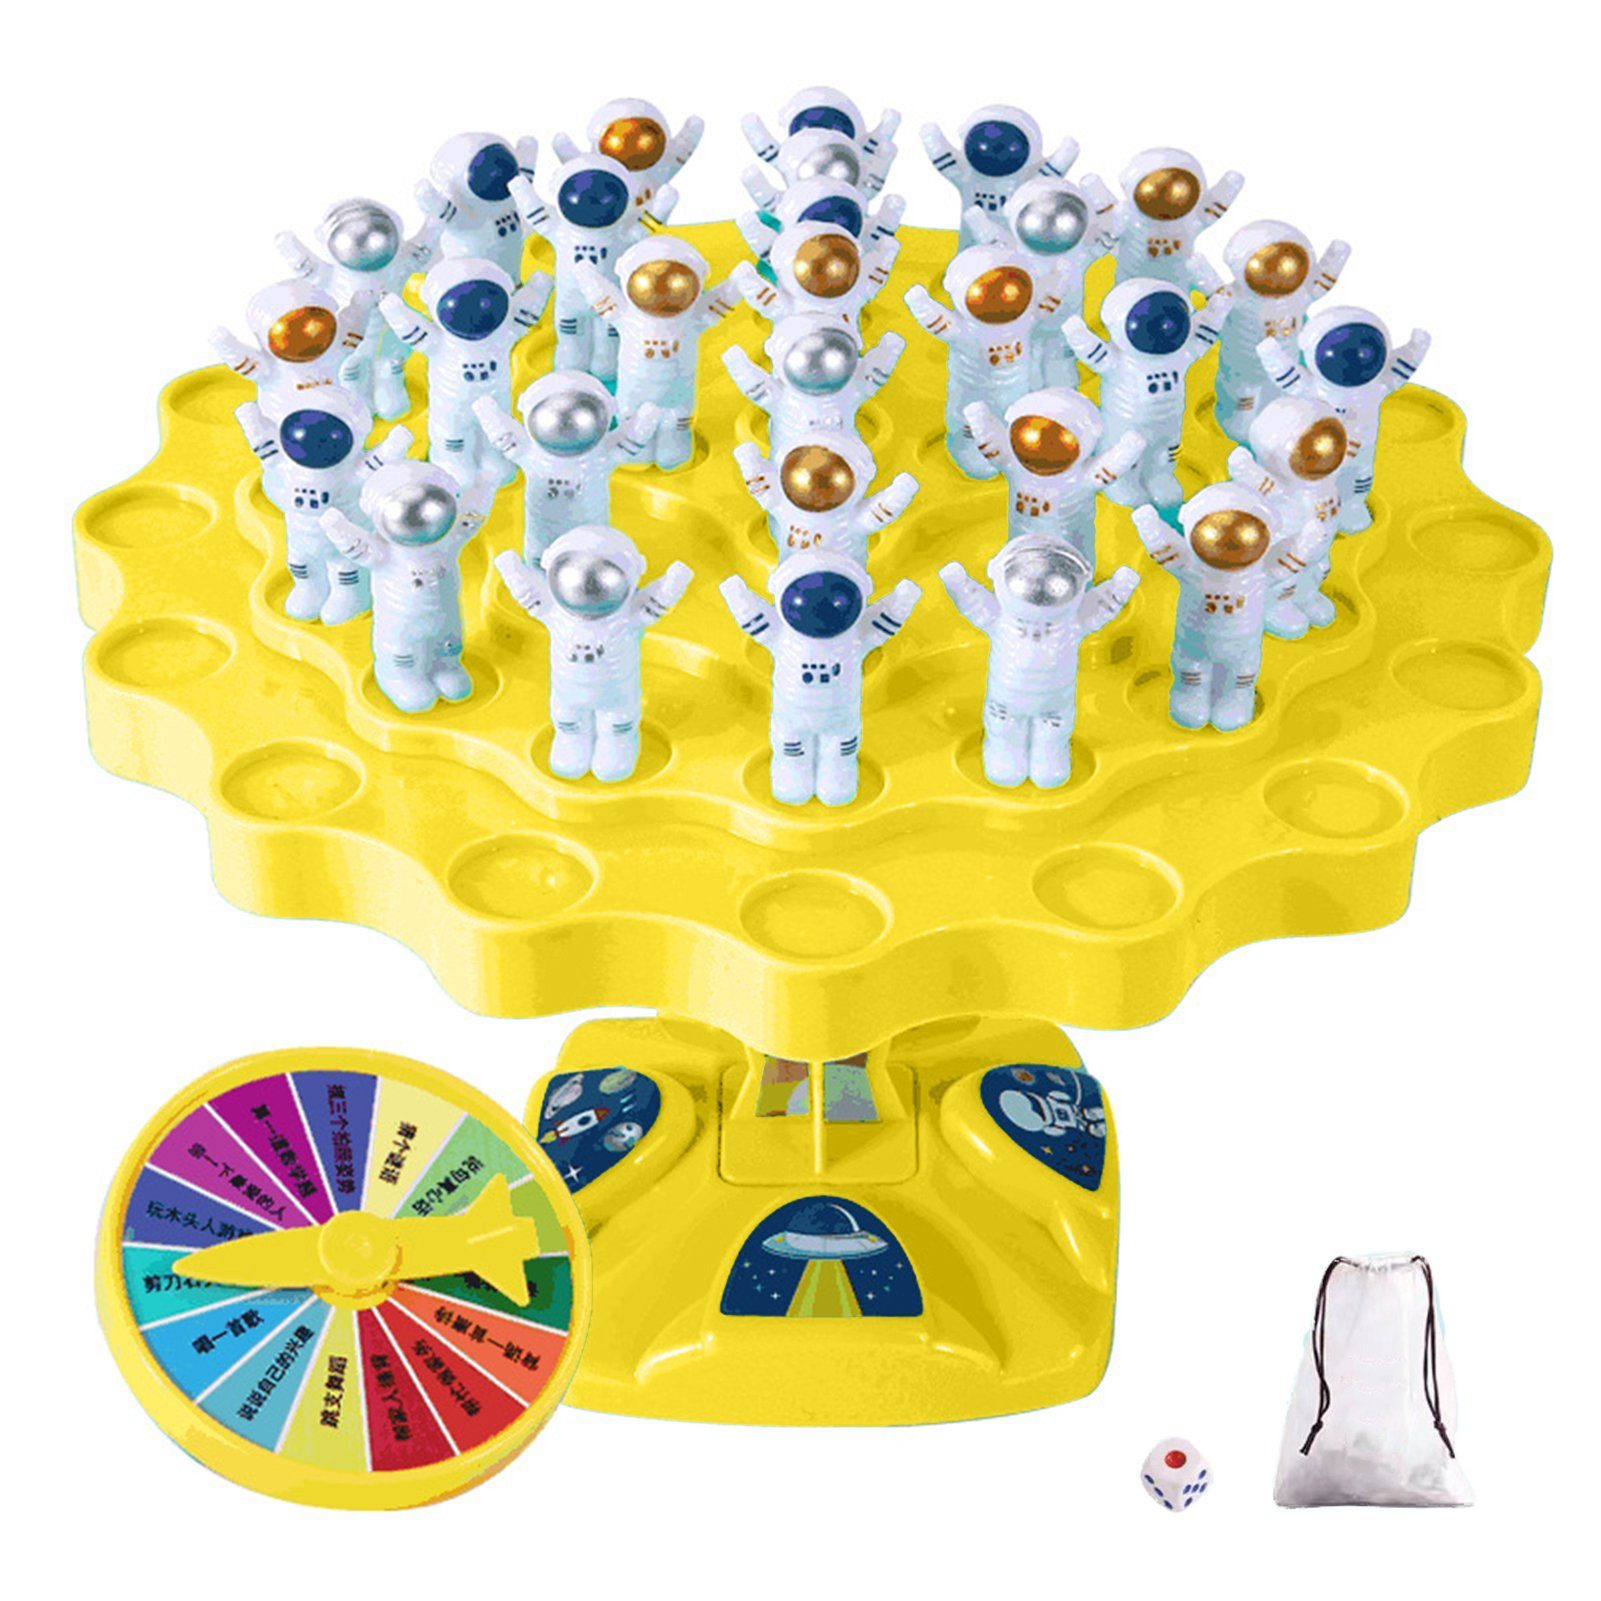 Rutaqian Lernspielzeug Balancing Tree Game , Reisespielzeug und Spiele (Astronauten-Design-Erleuchtungspuzzle), Für Kinder im Vorschulalter, Geburtstagsgeschenke Gelb